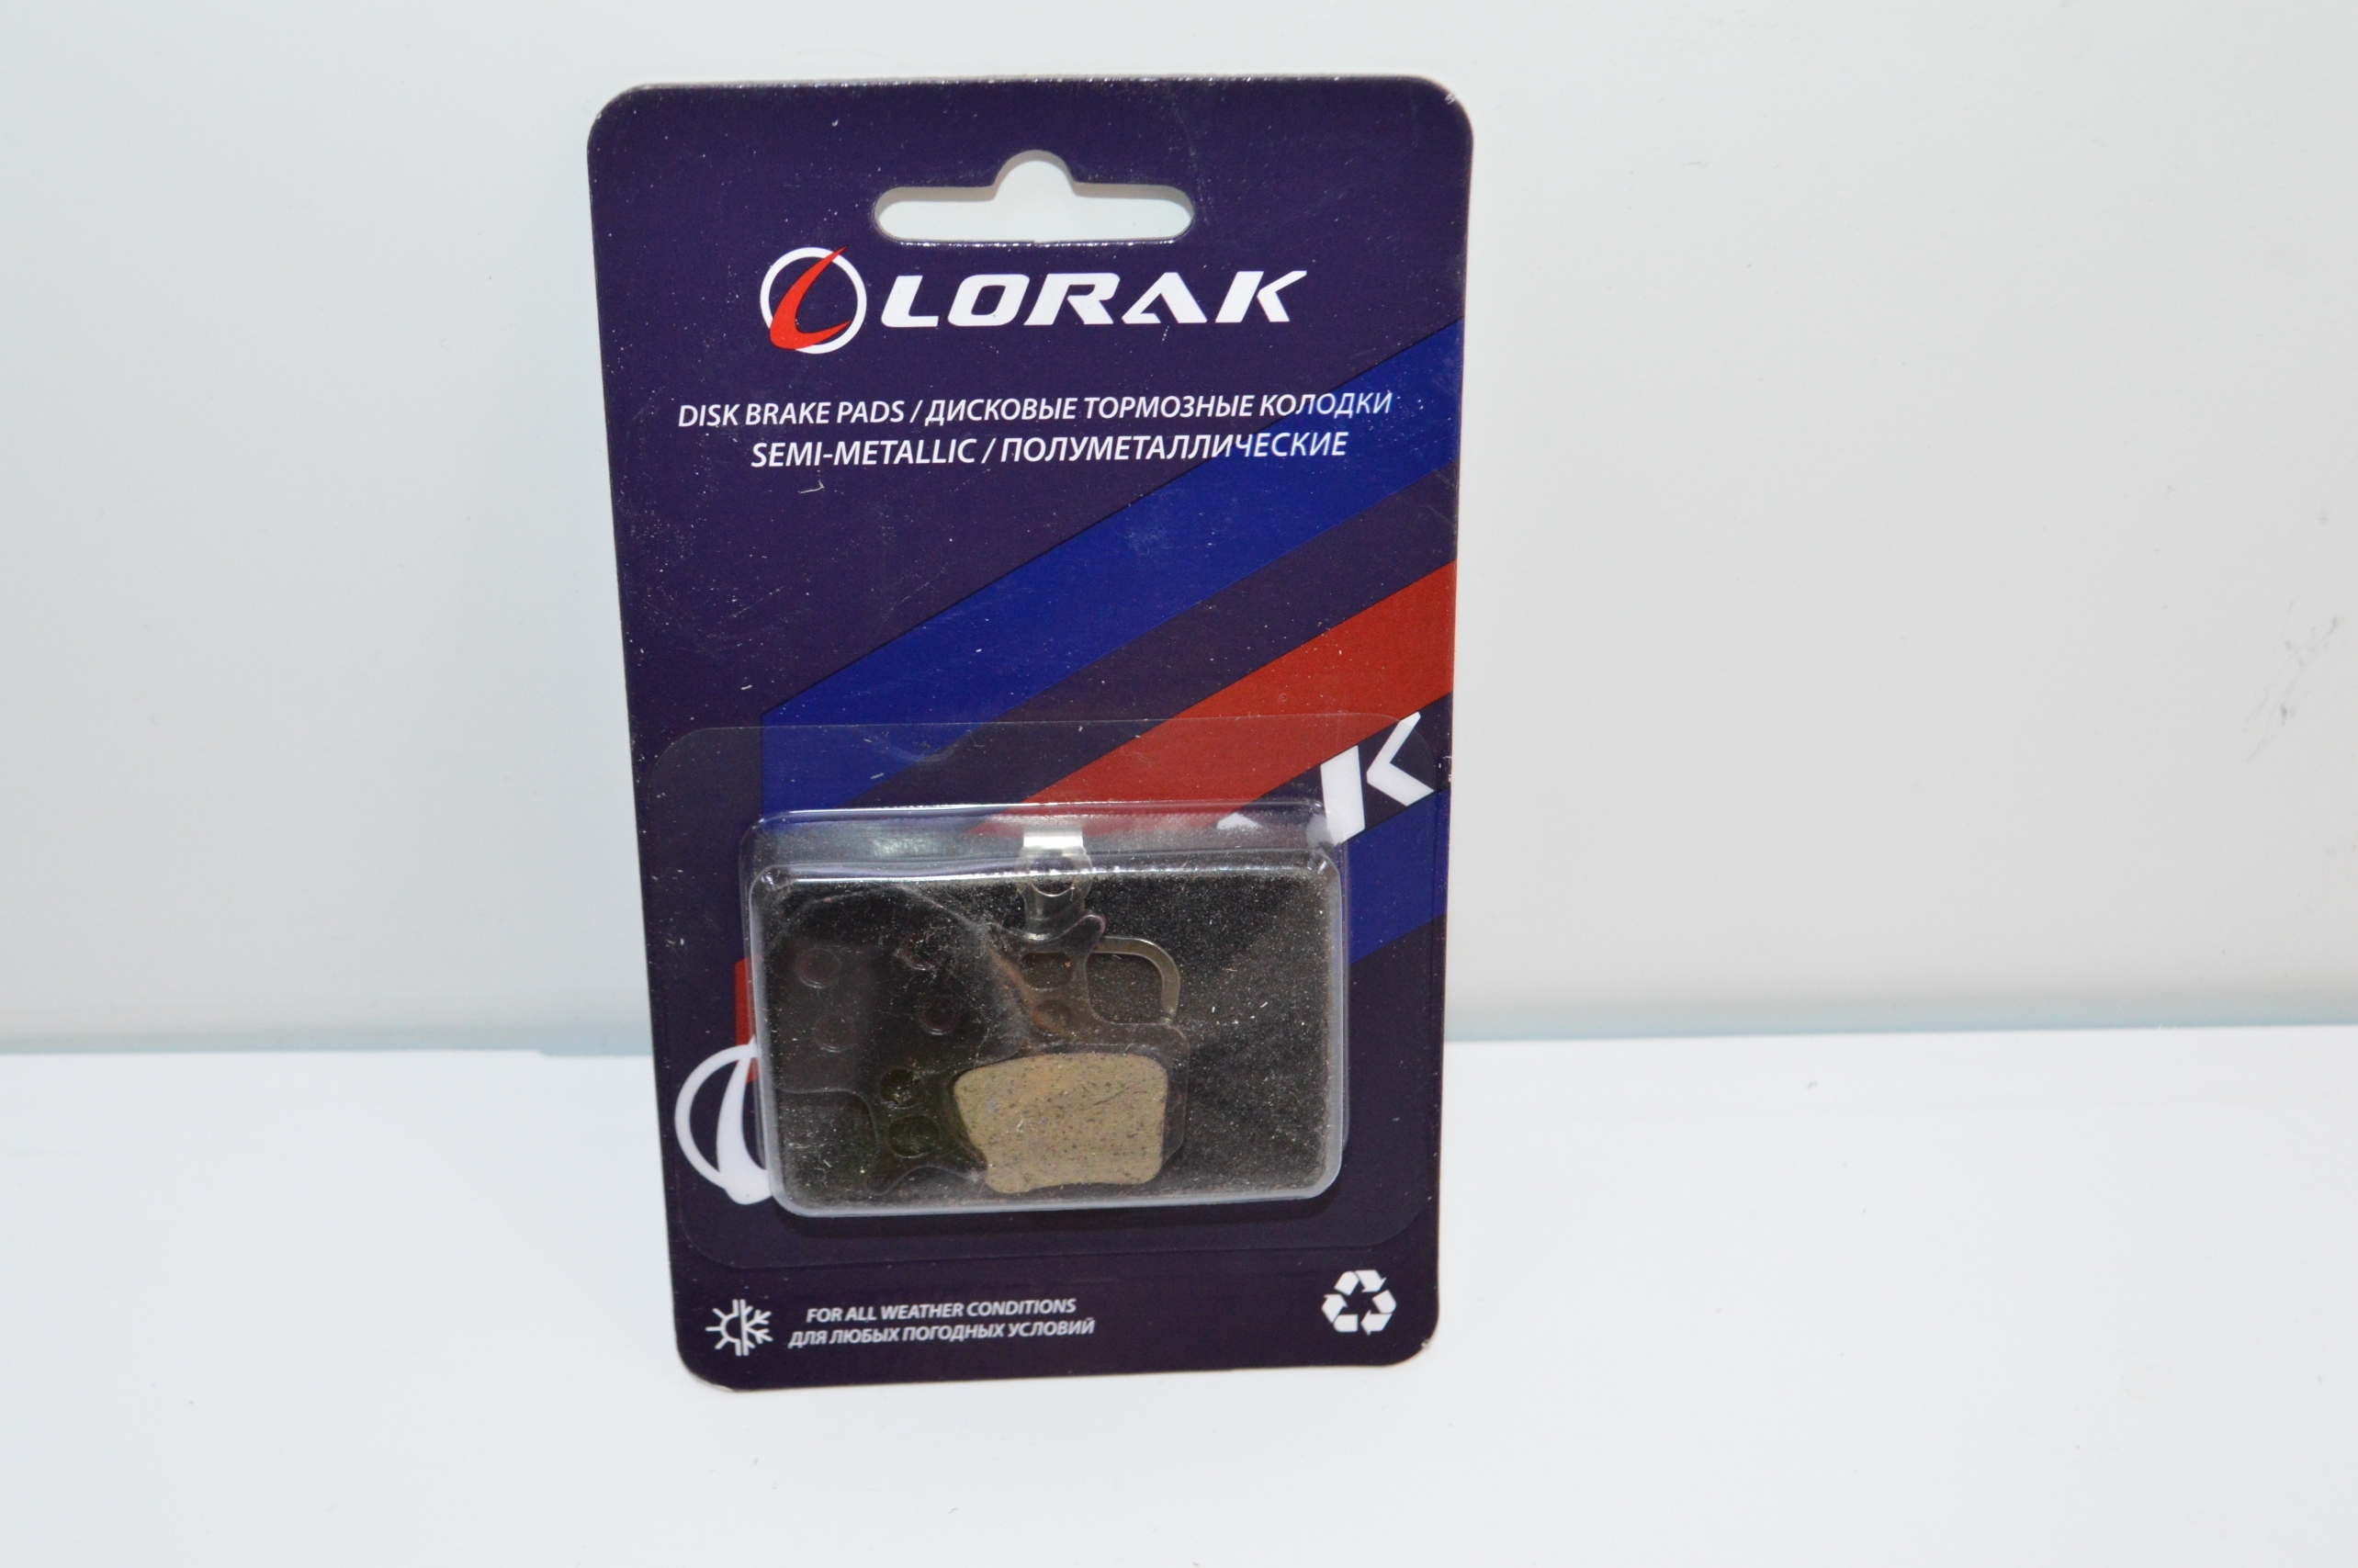 Колодка для диска Lorak P-14, код 40945